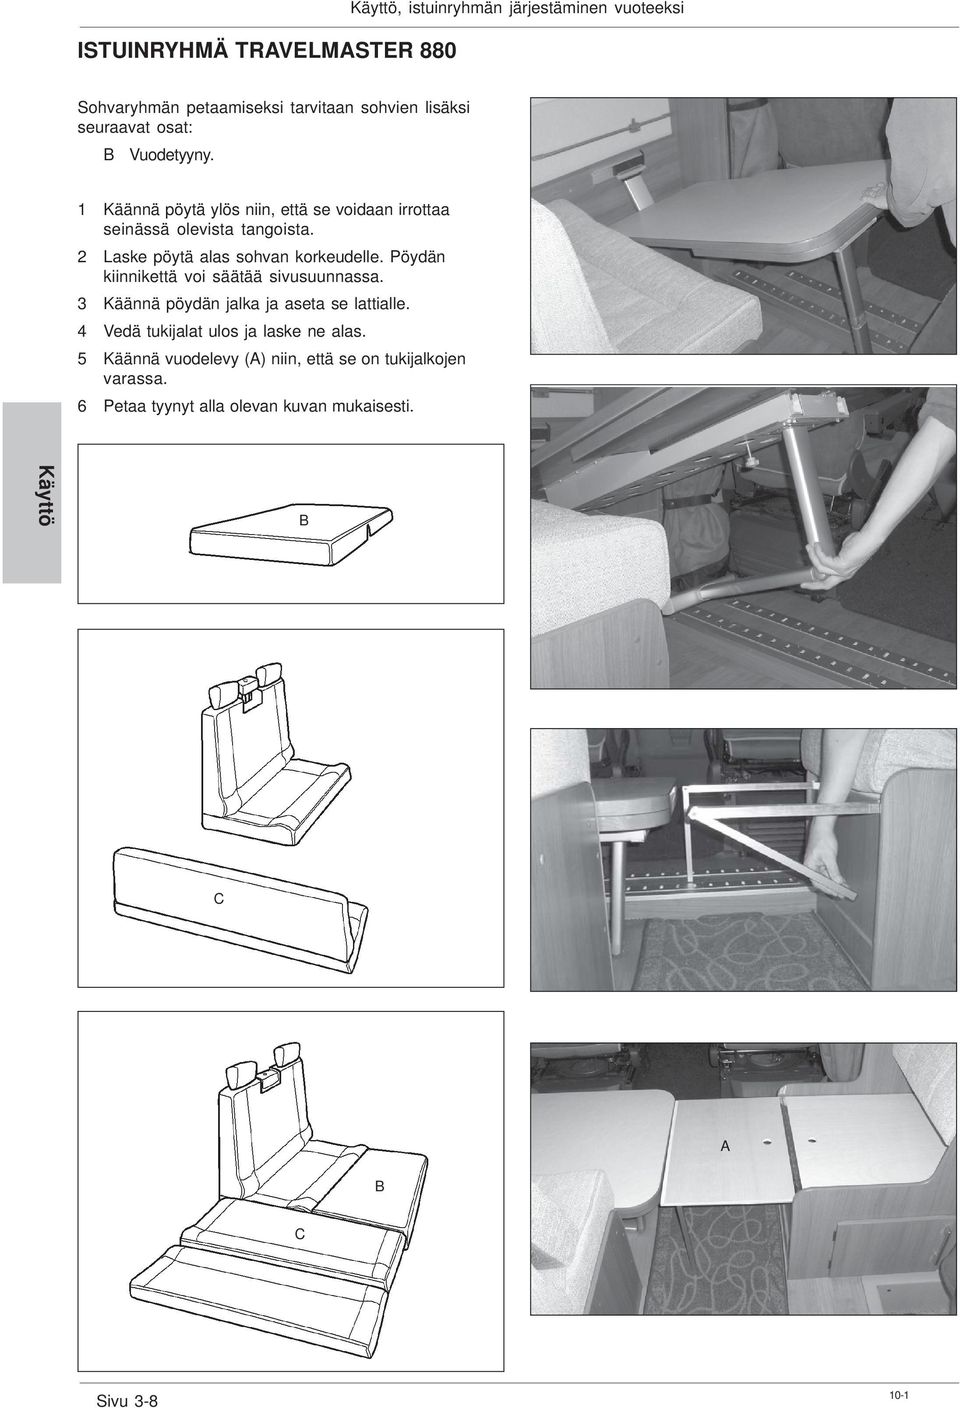 2 Laske pöytä alas sohvan korkeudelle. Pöydän kiinnikettä voi säätää sivusuunnassa. 3 Käännä pöydän jalka ja aseta se lattialle.